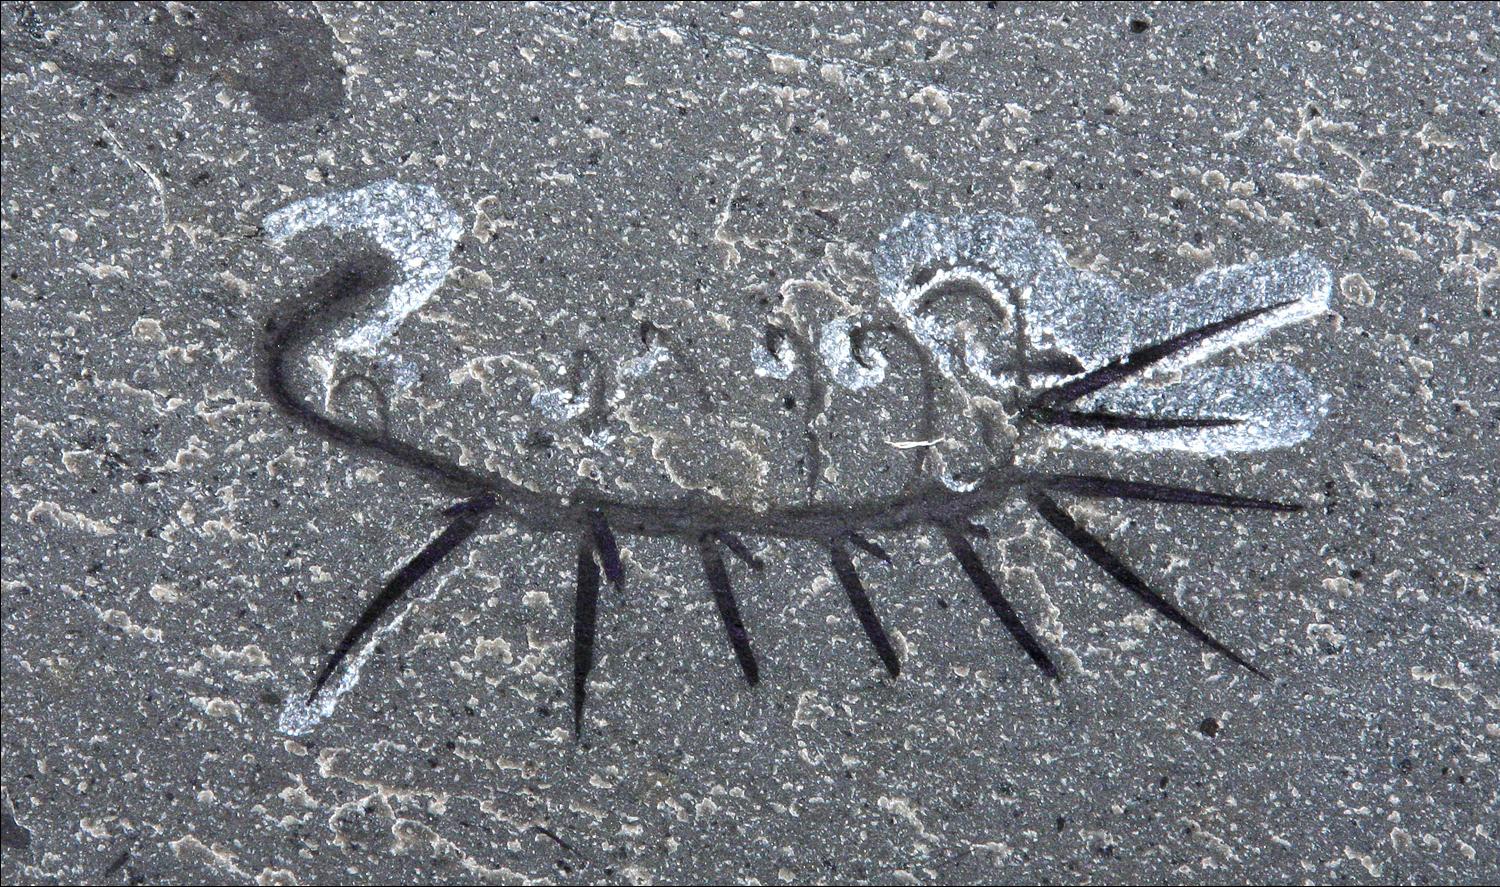 Foto av fossil Hallucigenia, upp och ner.